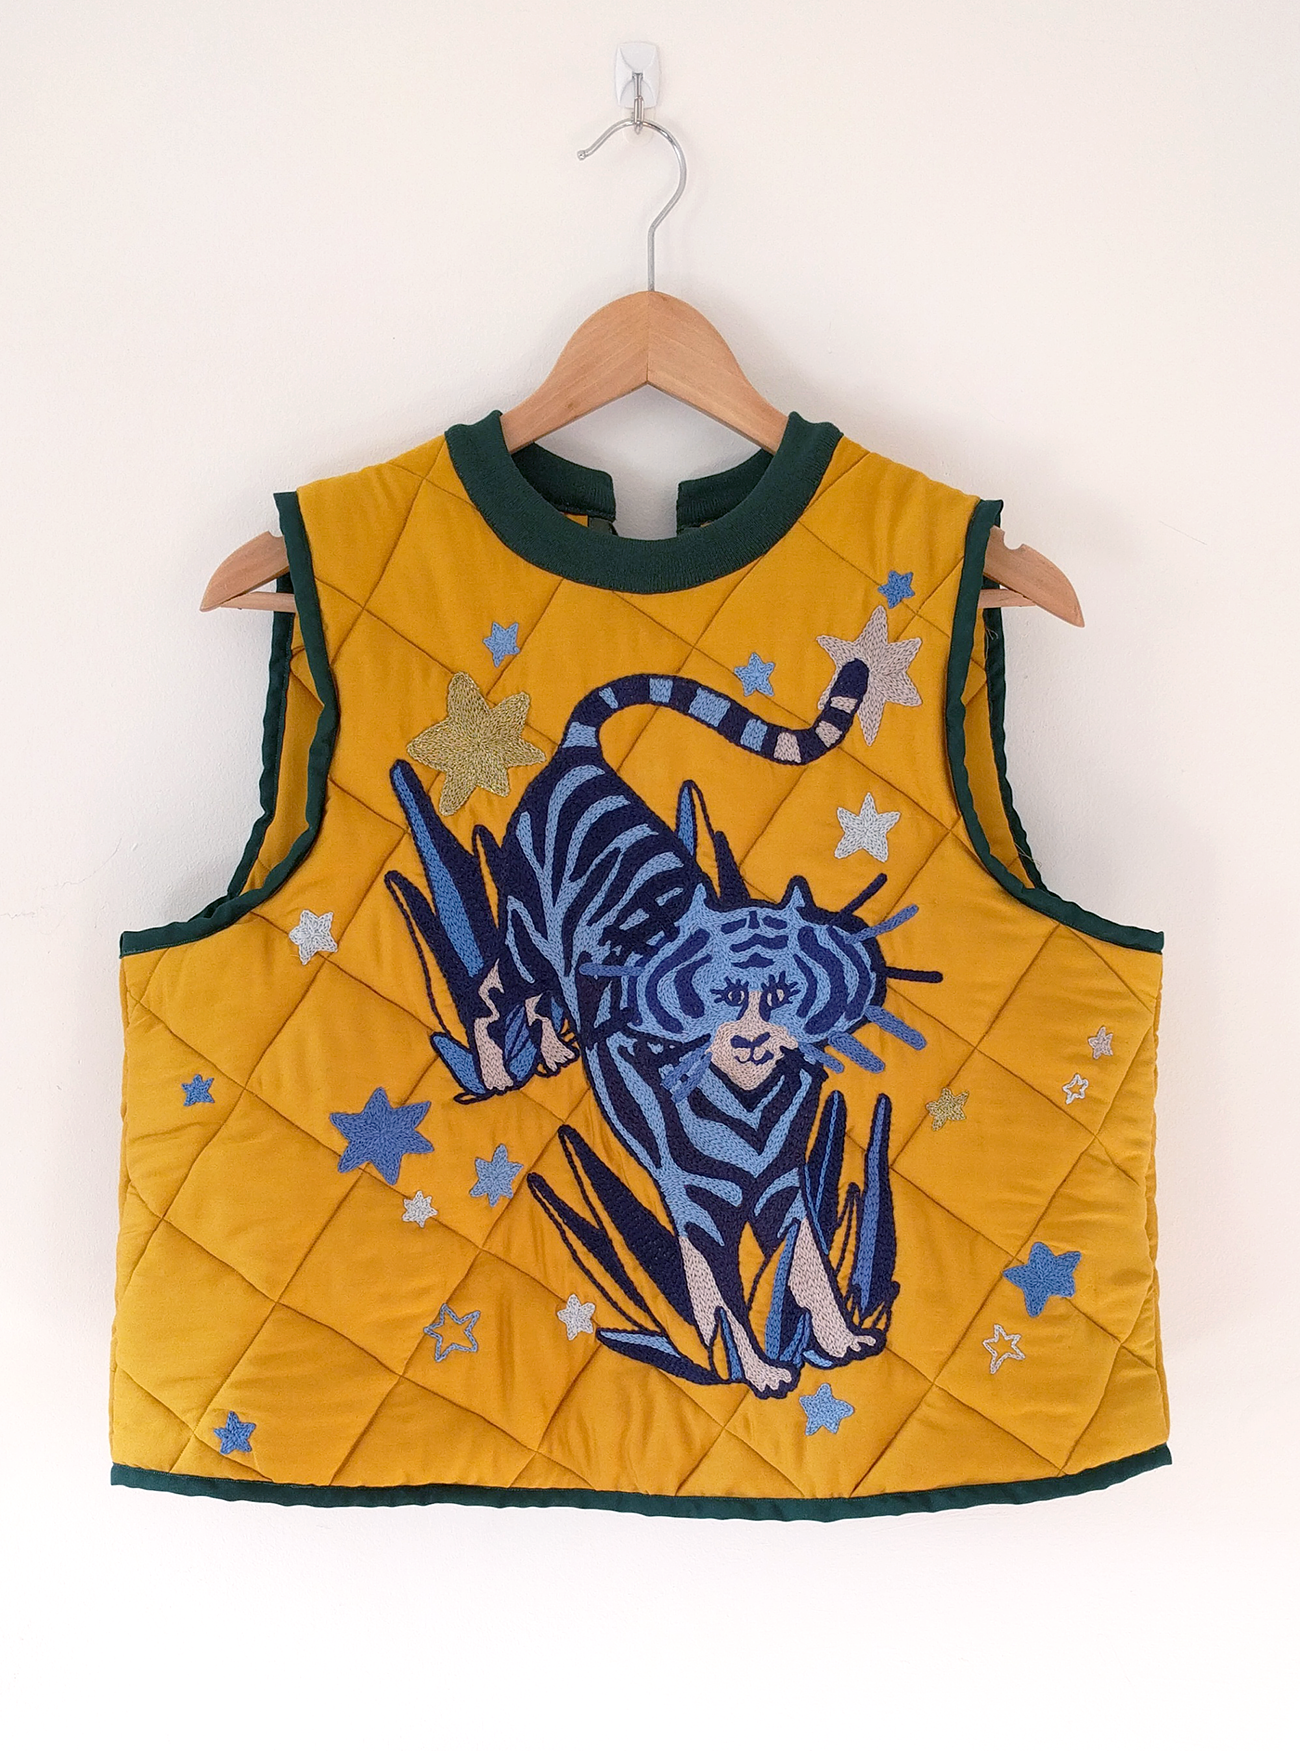 Tiger motif embroidered vest